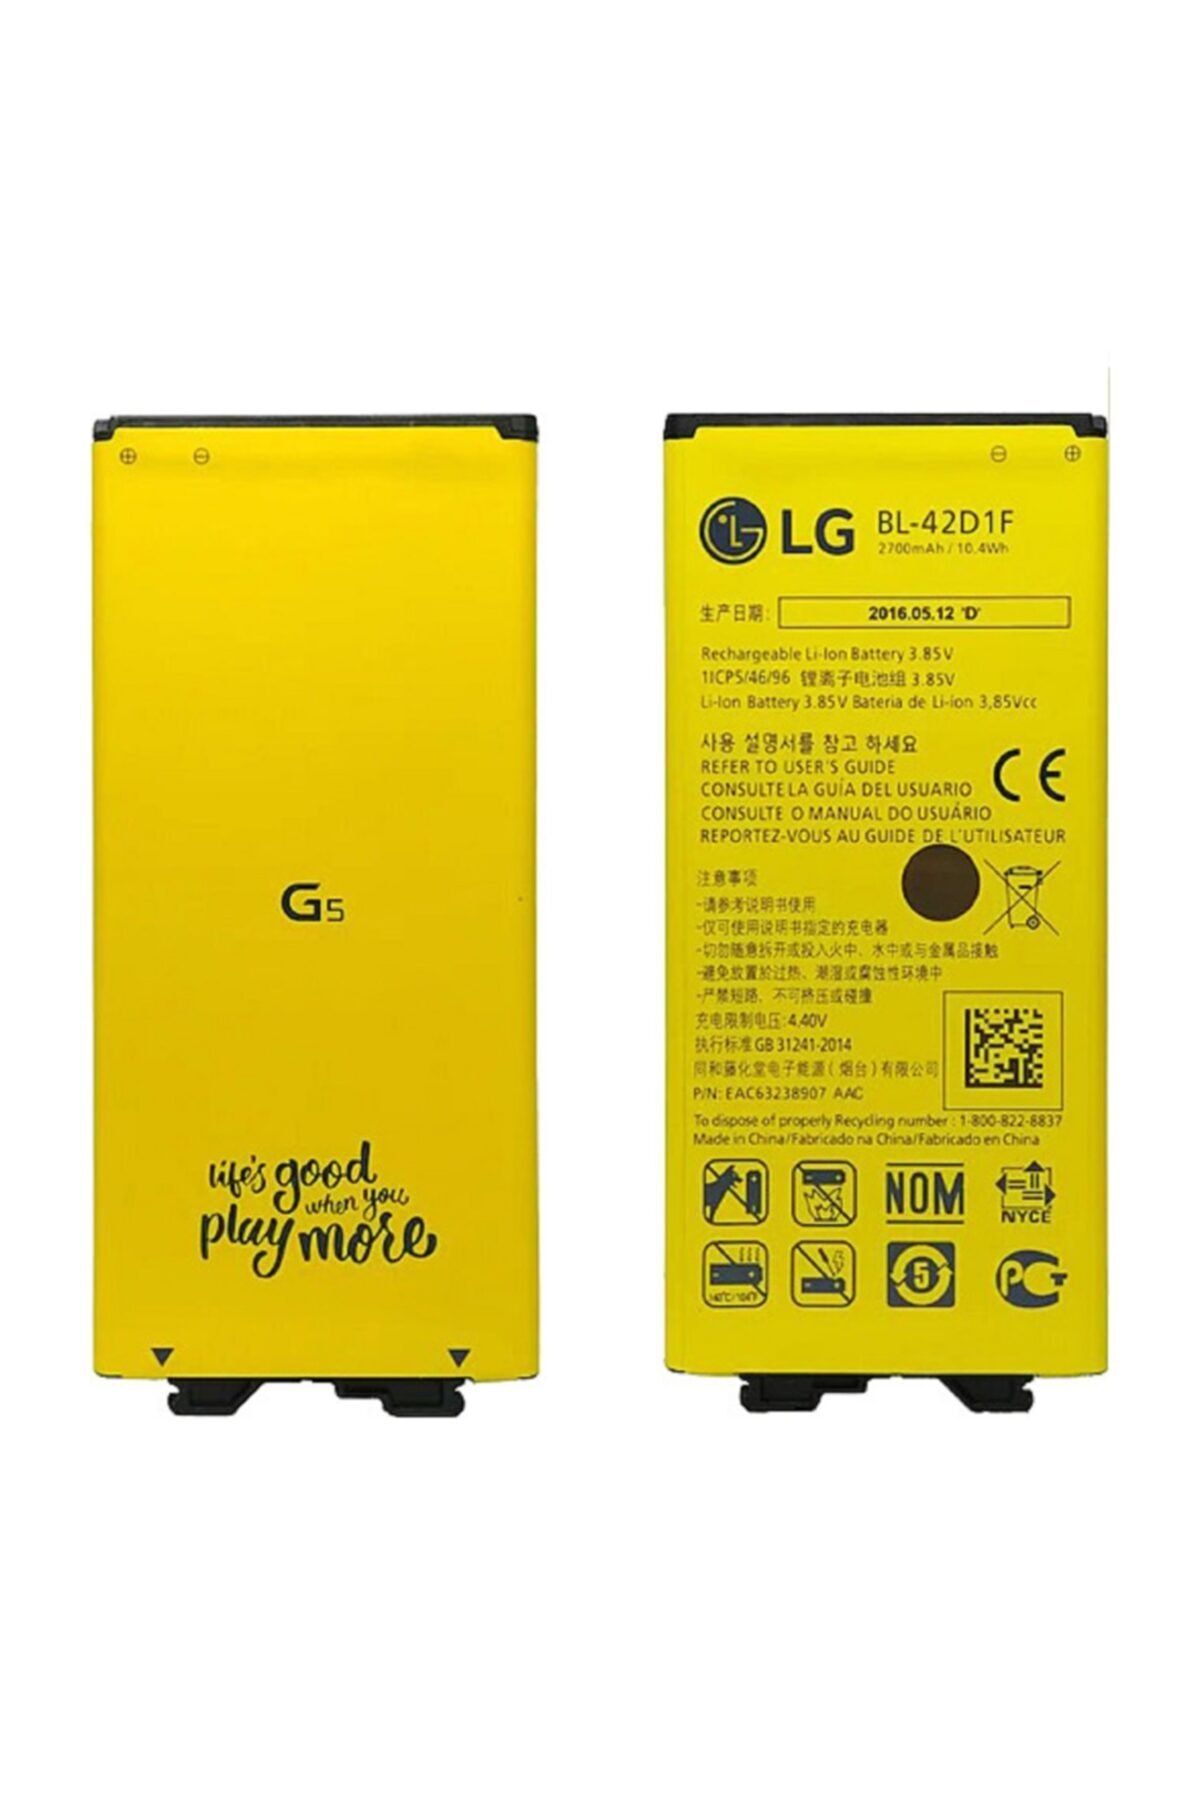 LG G5 Bl-42d1f Orjinal Batarya Pil H850/h840/h820/h860 Seri Uyumlu 2,800 Mah